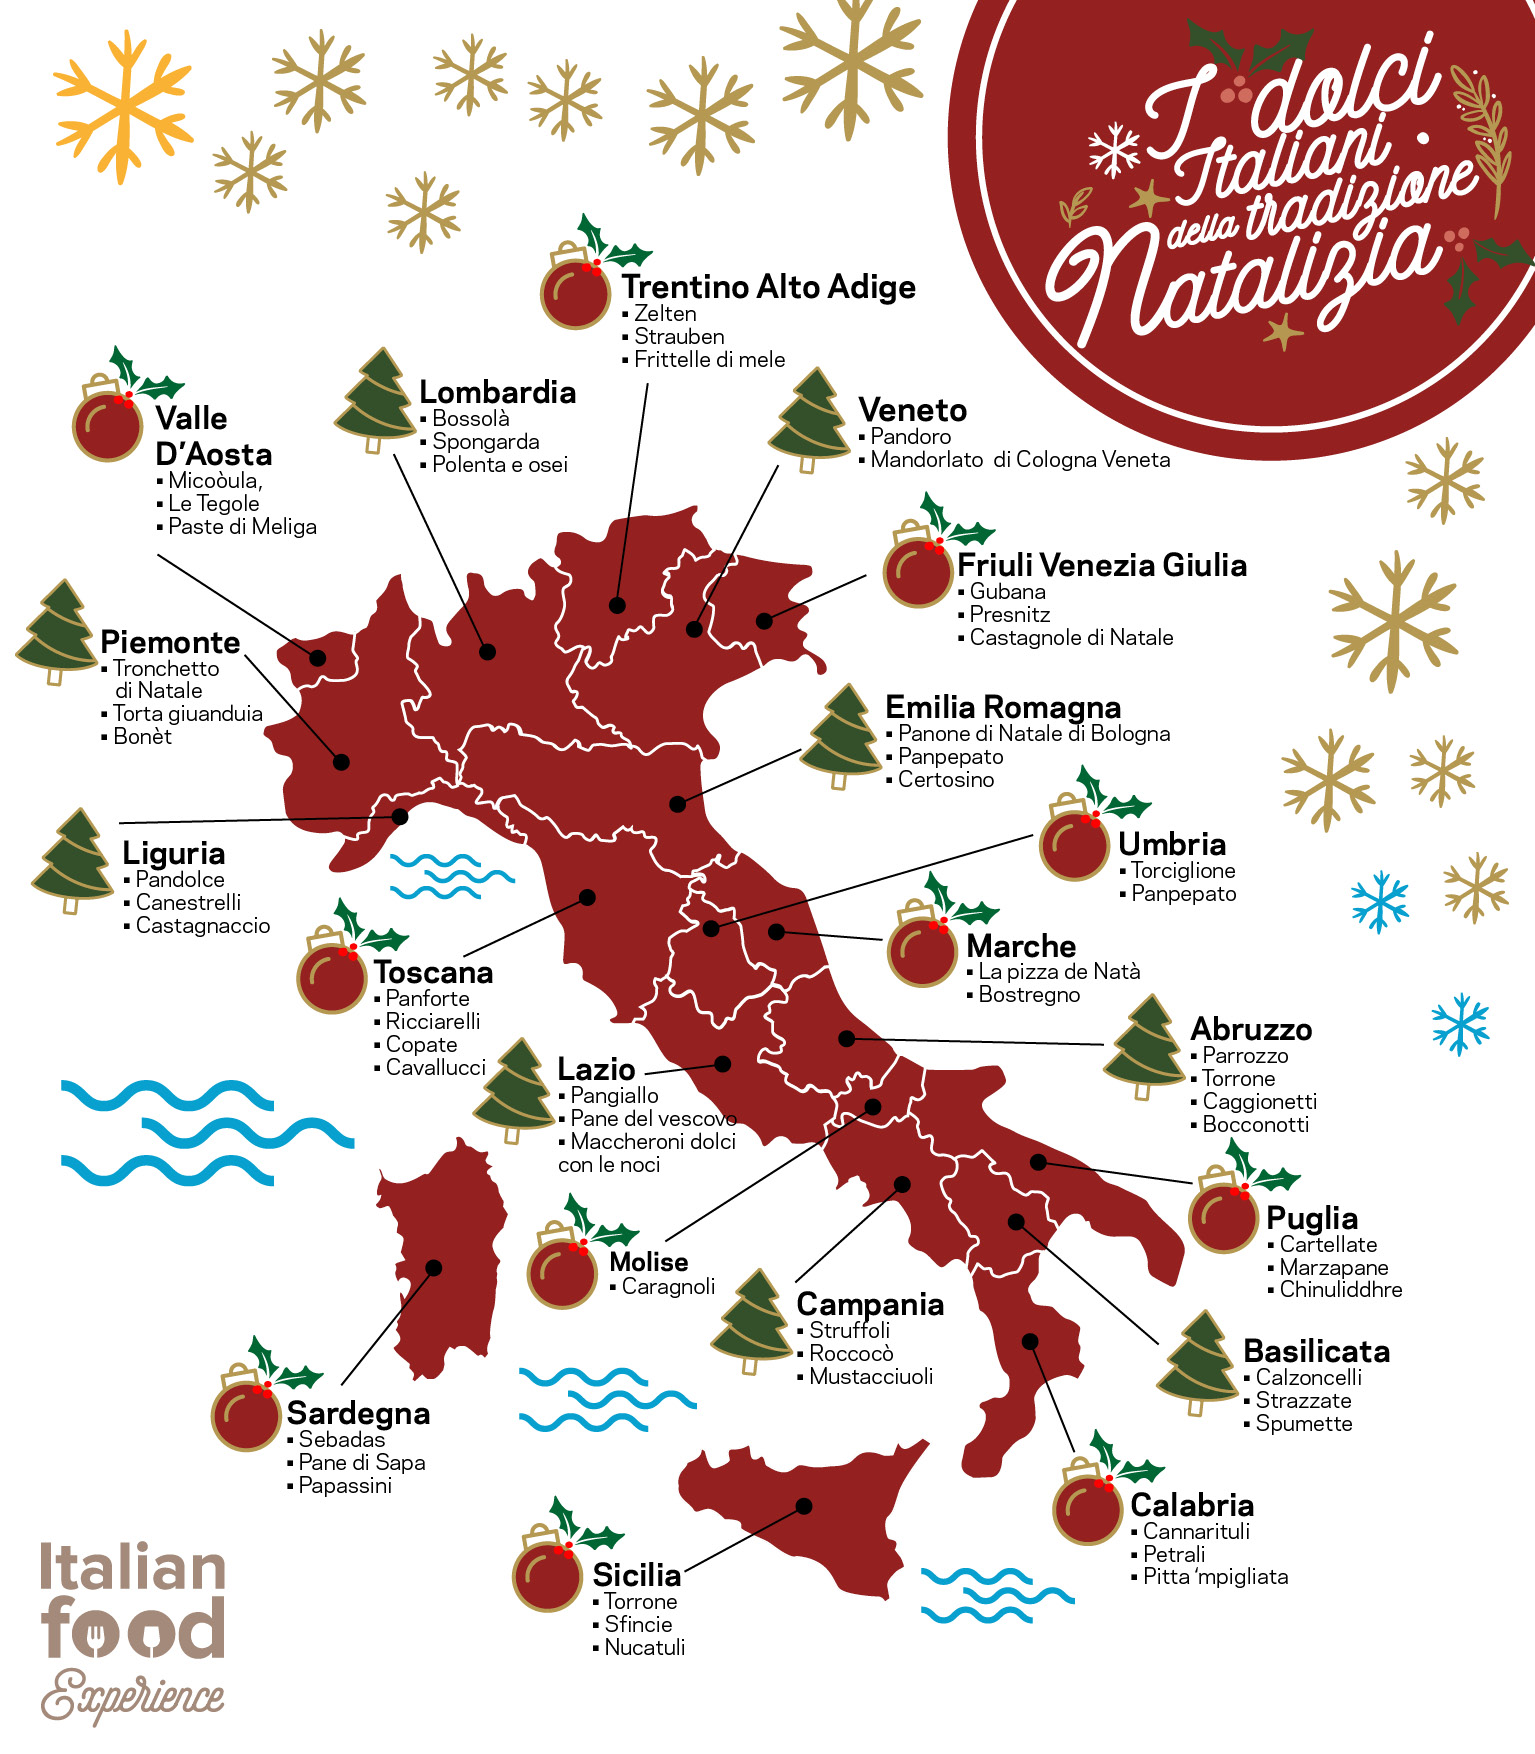 Dolci Di Natale Wikipedia.Dolci Tipici Natalizi In Italia Regione Per Regione